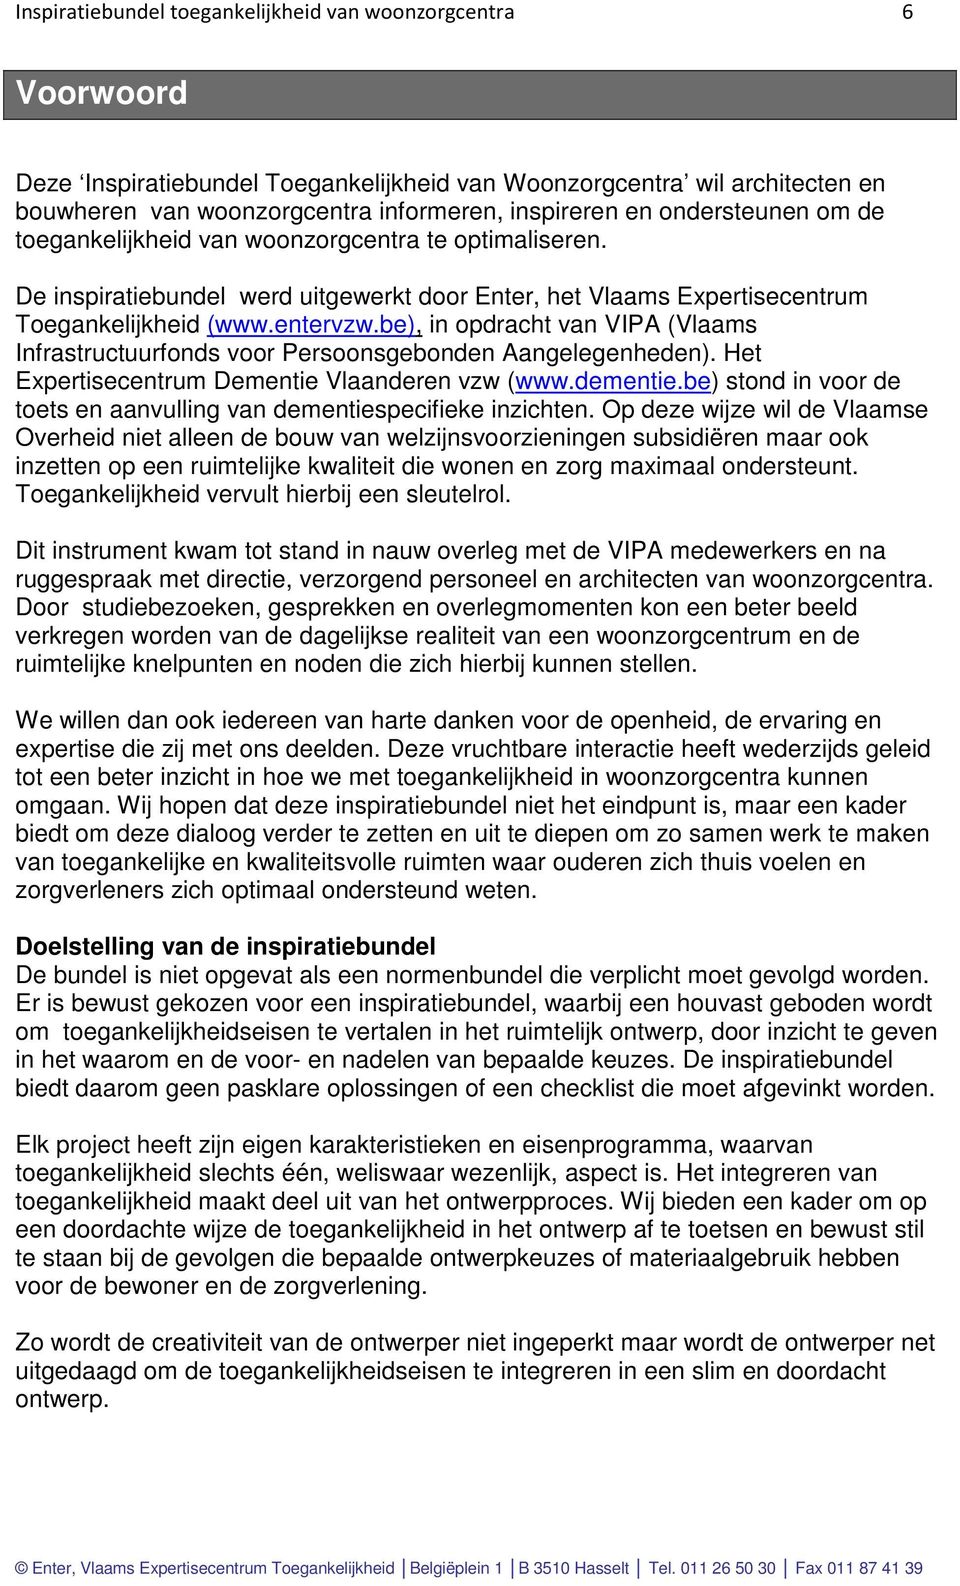 be), in opdracht van VIPA (Vlaams Infrastructuurfonds voor Persoonsgebonden Aangelegenheden). Het Expertisecentrum Dementie Vlaanderen vzw (www.dementie.